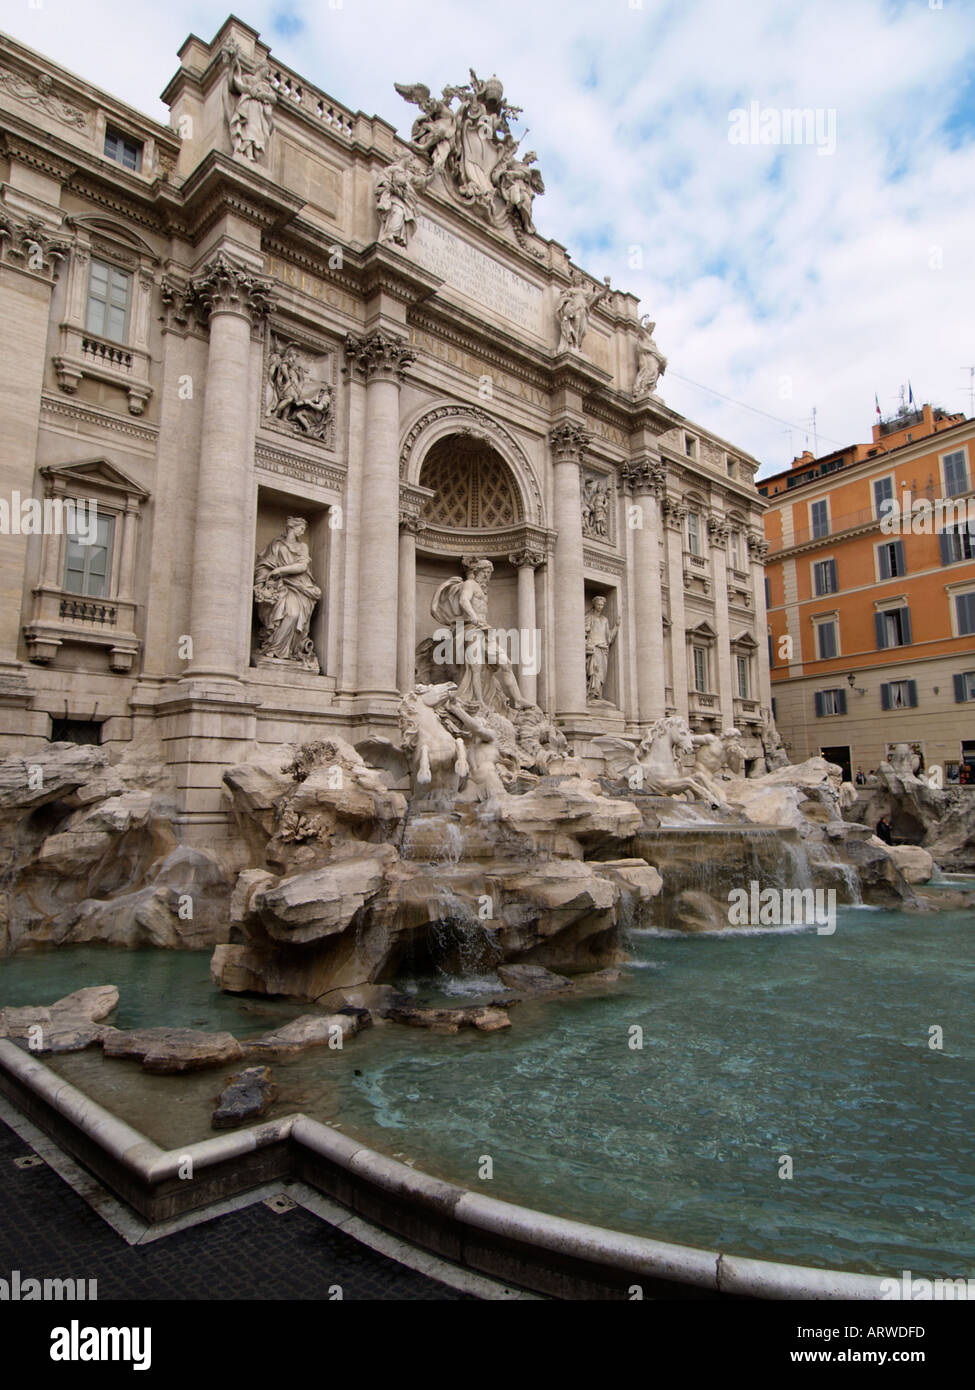 La célèbre fontaine de Trevi dans le coeur de Rome Lazio Italie a été conçu par Nicola Salvi et achevée en 1762 Banque D'Images